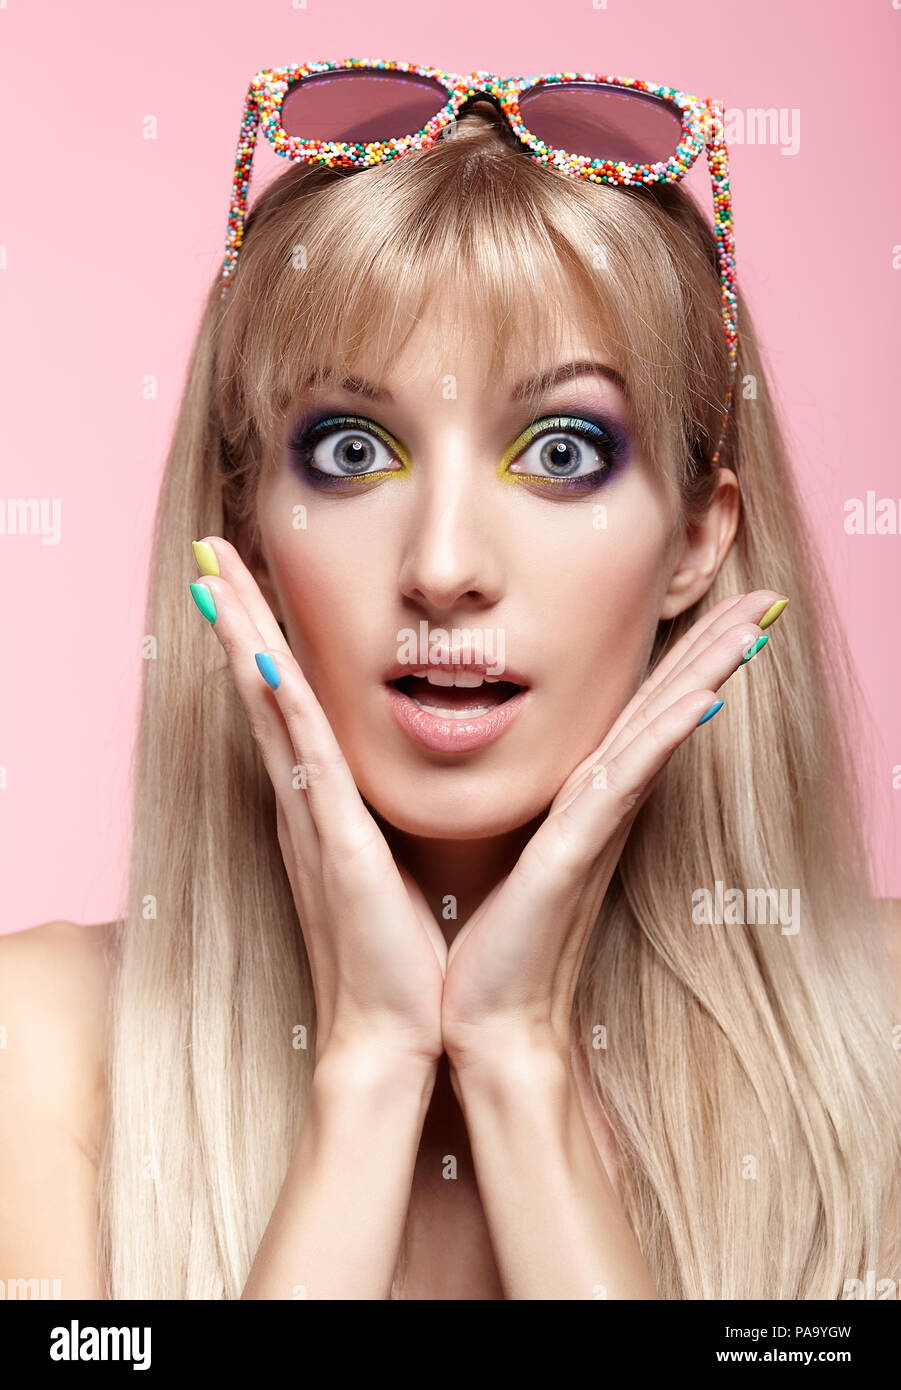 Junge blonde Frau mit Spaß Süßigkeiten Brille auf die Stirn. Porträt von Frauen in lila Kleid mit blauen und gelben Augen Make-up. Stockfoto